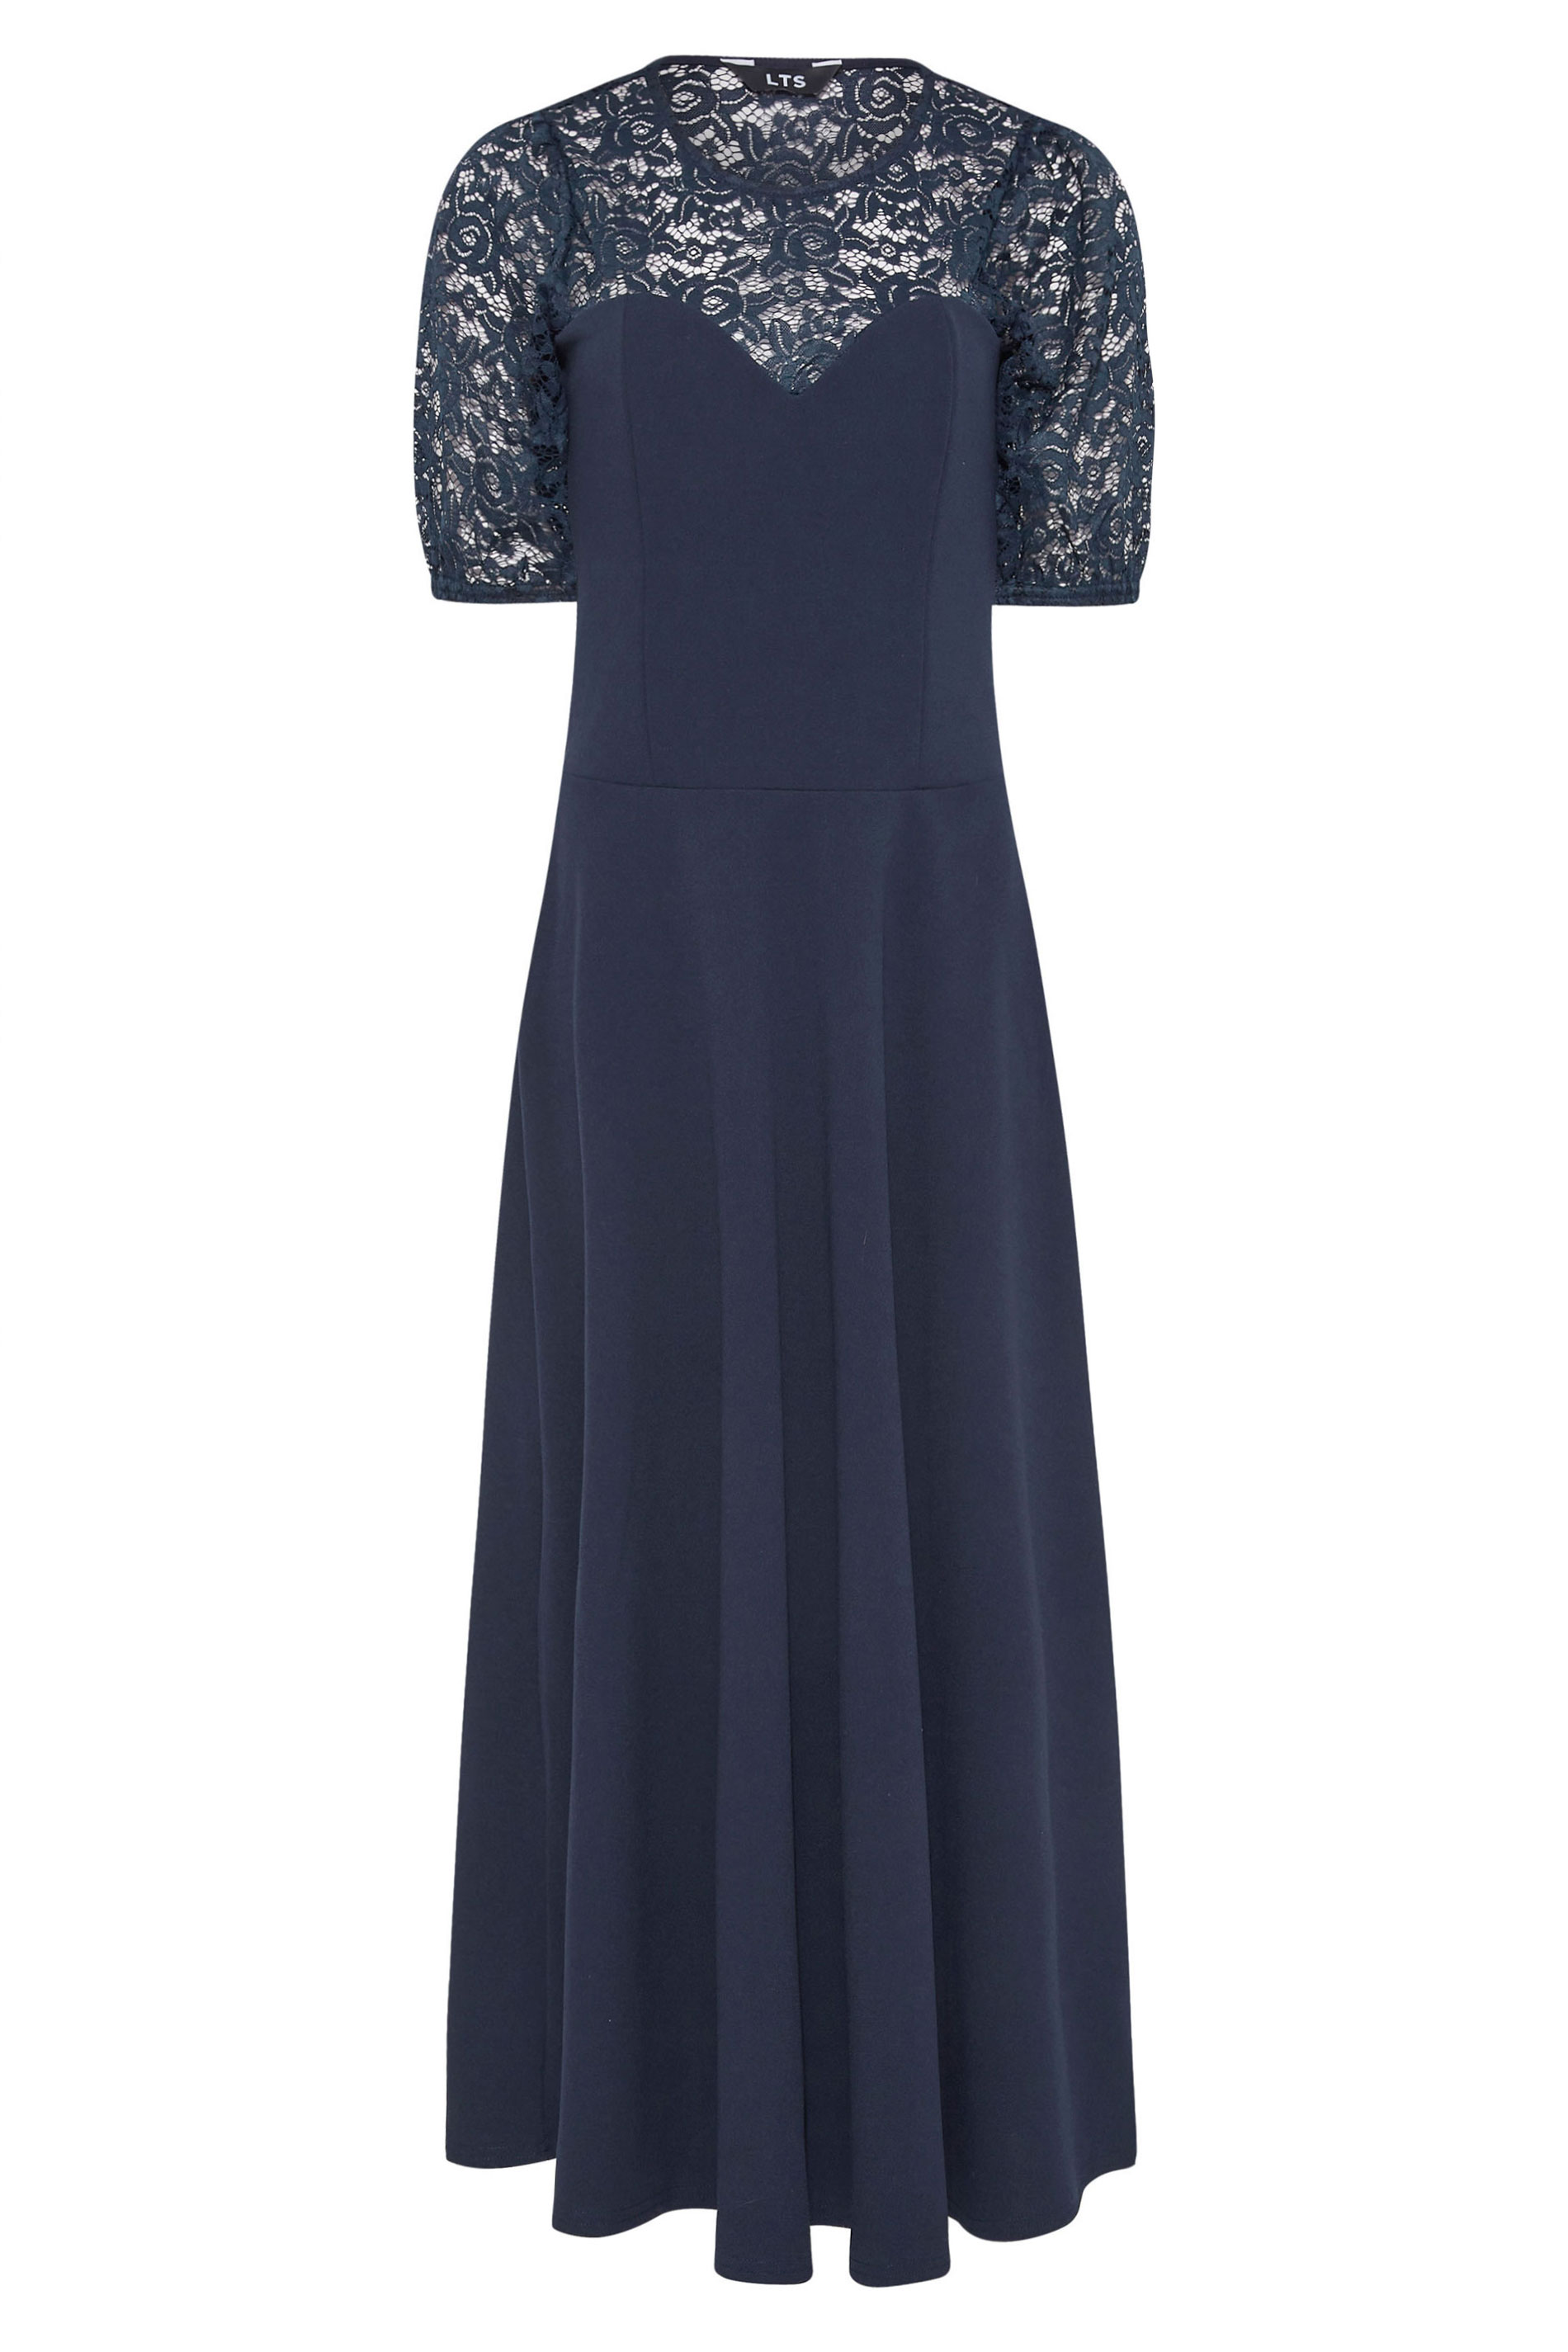 Tall Women's LTS Dark Blue Lace Midi Dress | Long Tall Sally 2